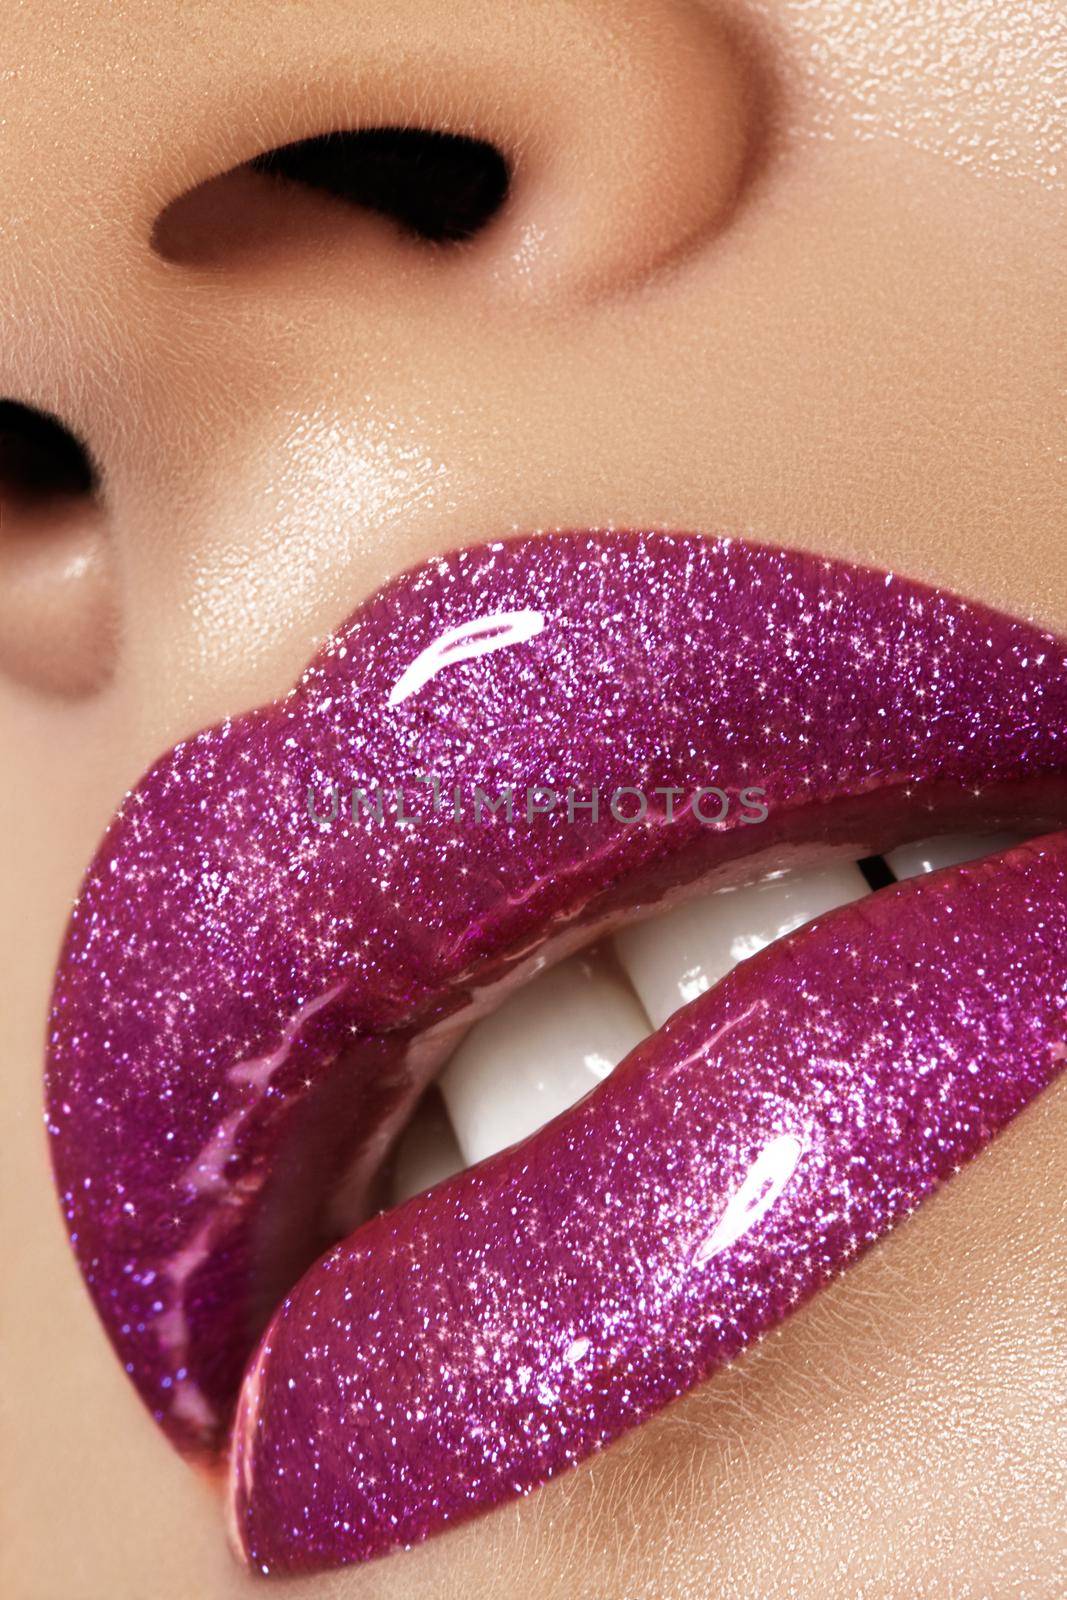 Glamour magenta gloss lip make-up. Fashion makeup beauty shot. Close-up female sexy full lips with celebrate pink gloss lipstick